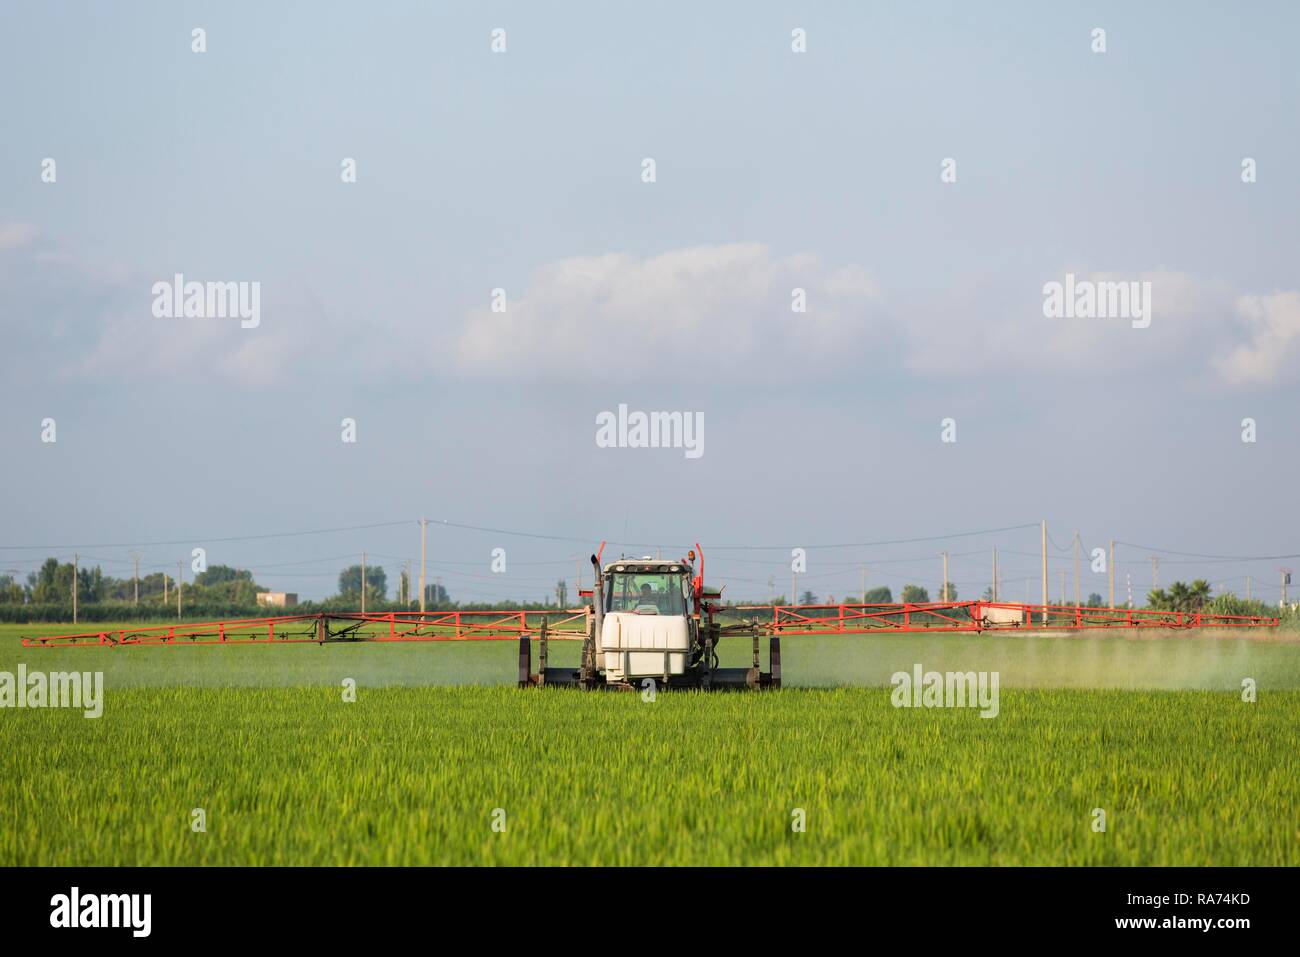 Ein Traktor Sprays ein Fungizid auf die Felder von Reis (Oryza sativa), im Juli, Umgebung des Ebro-delta Natur Stockfoto